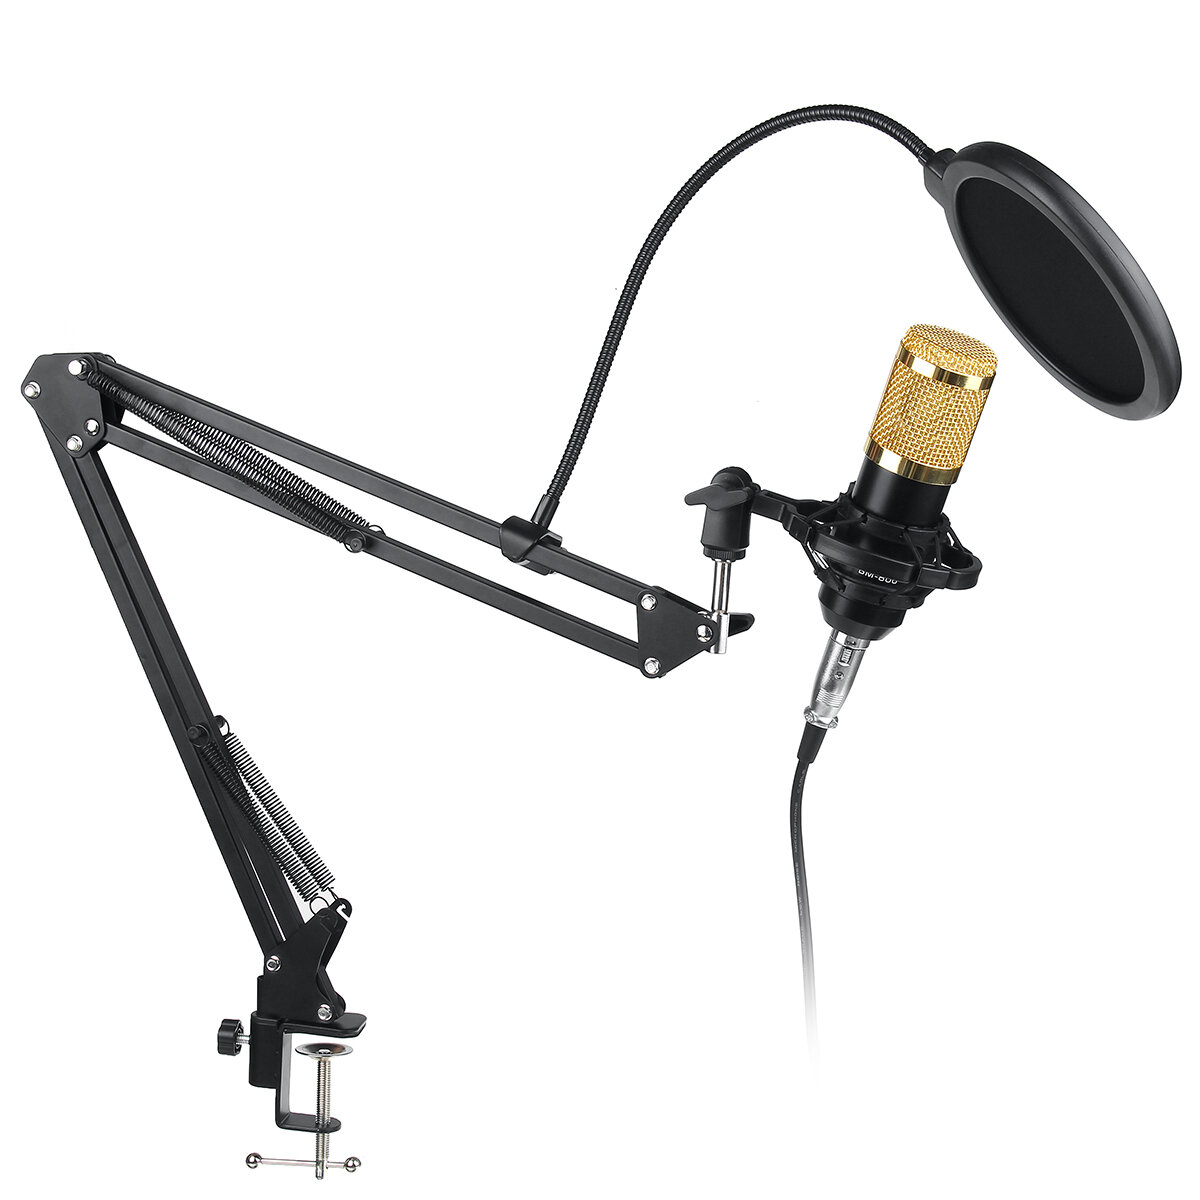 Condensador BM-800 Micrófono Kit de soporte de brazo de montaje de micrófono para grabación vocal en vivo en estudio